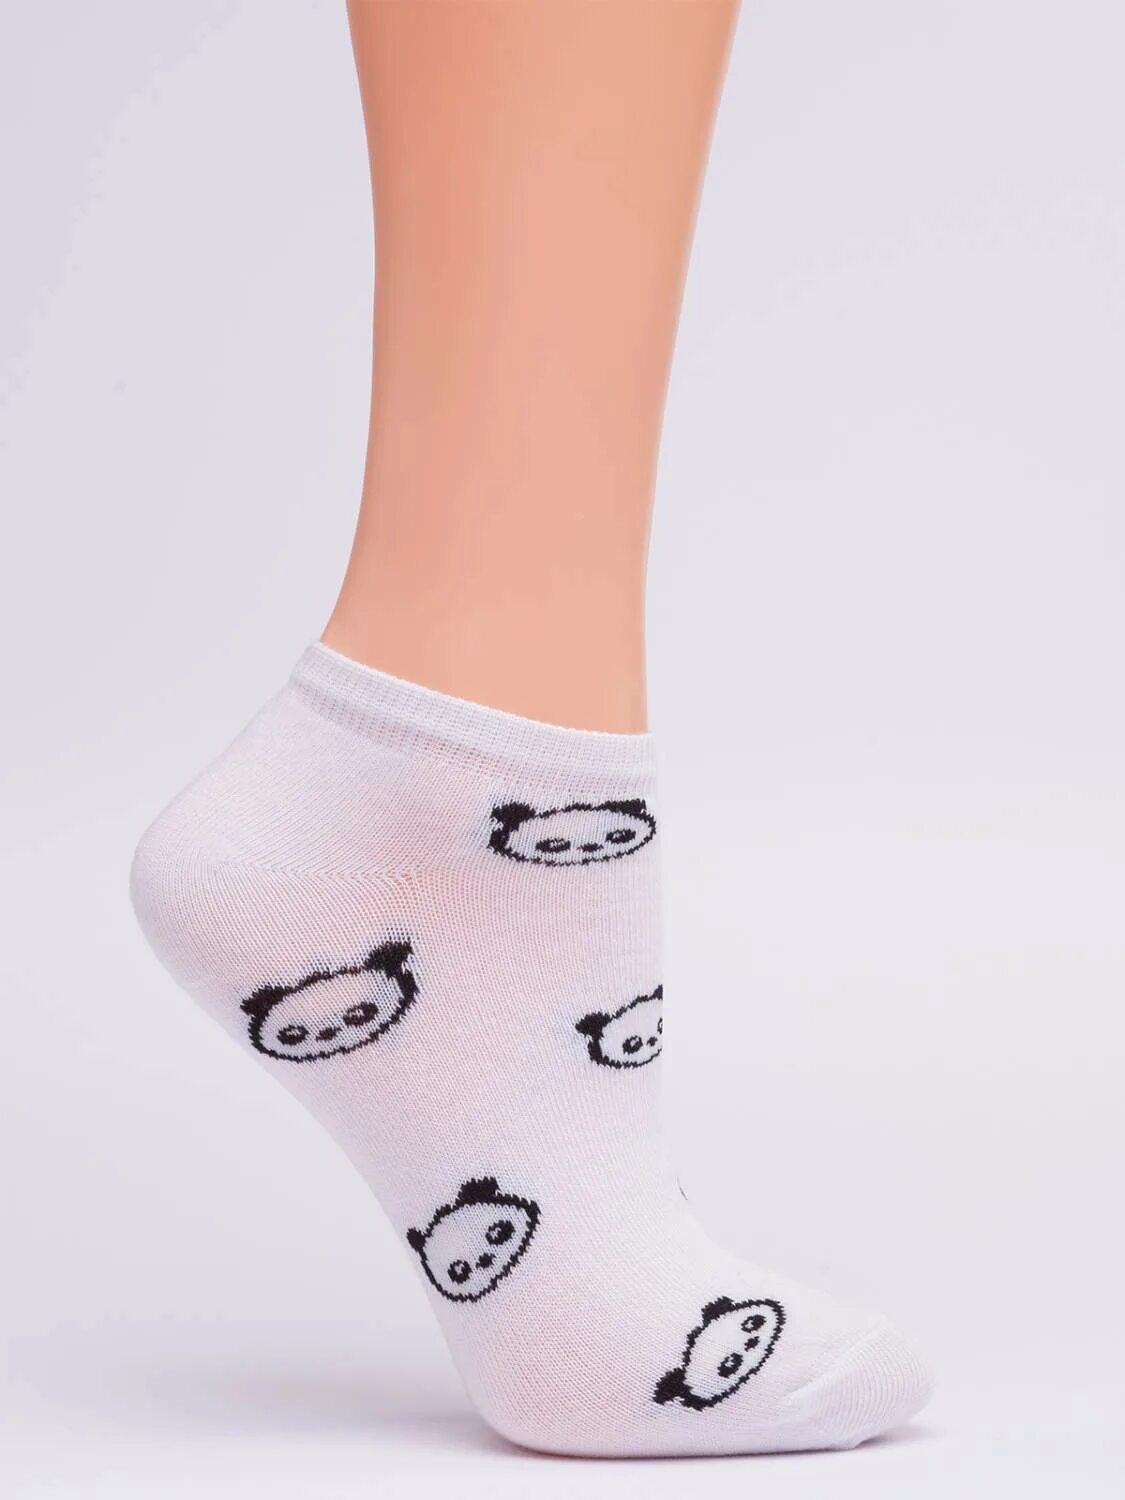 Носки Giulia ws1c 002. Носки женские. Носки для женщин. Носочки женские красивые. Купит носки женские москва